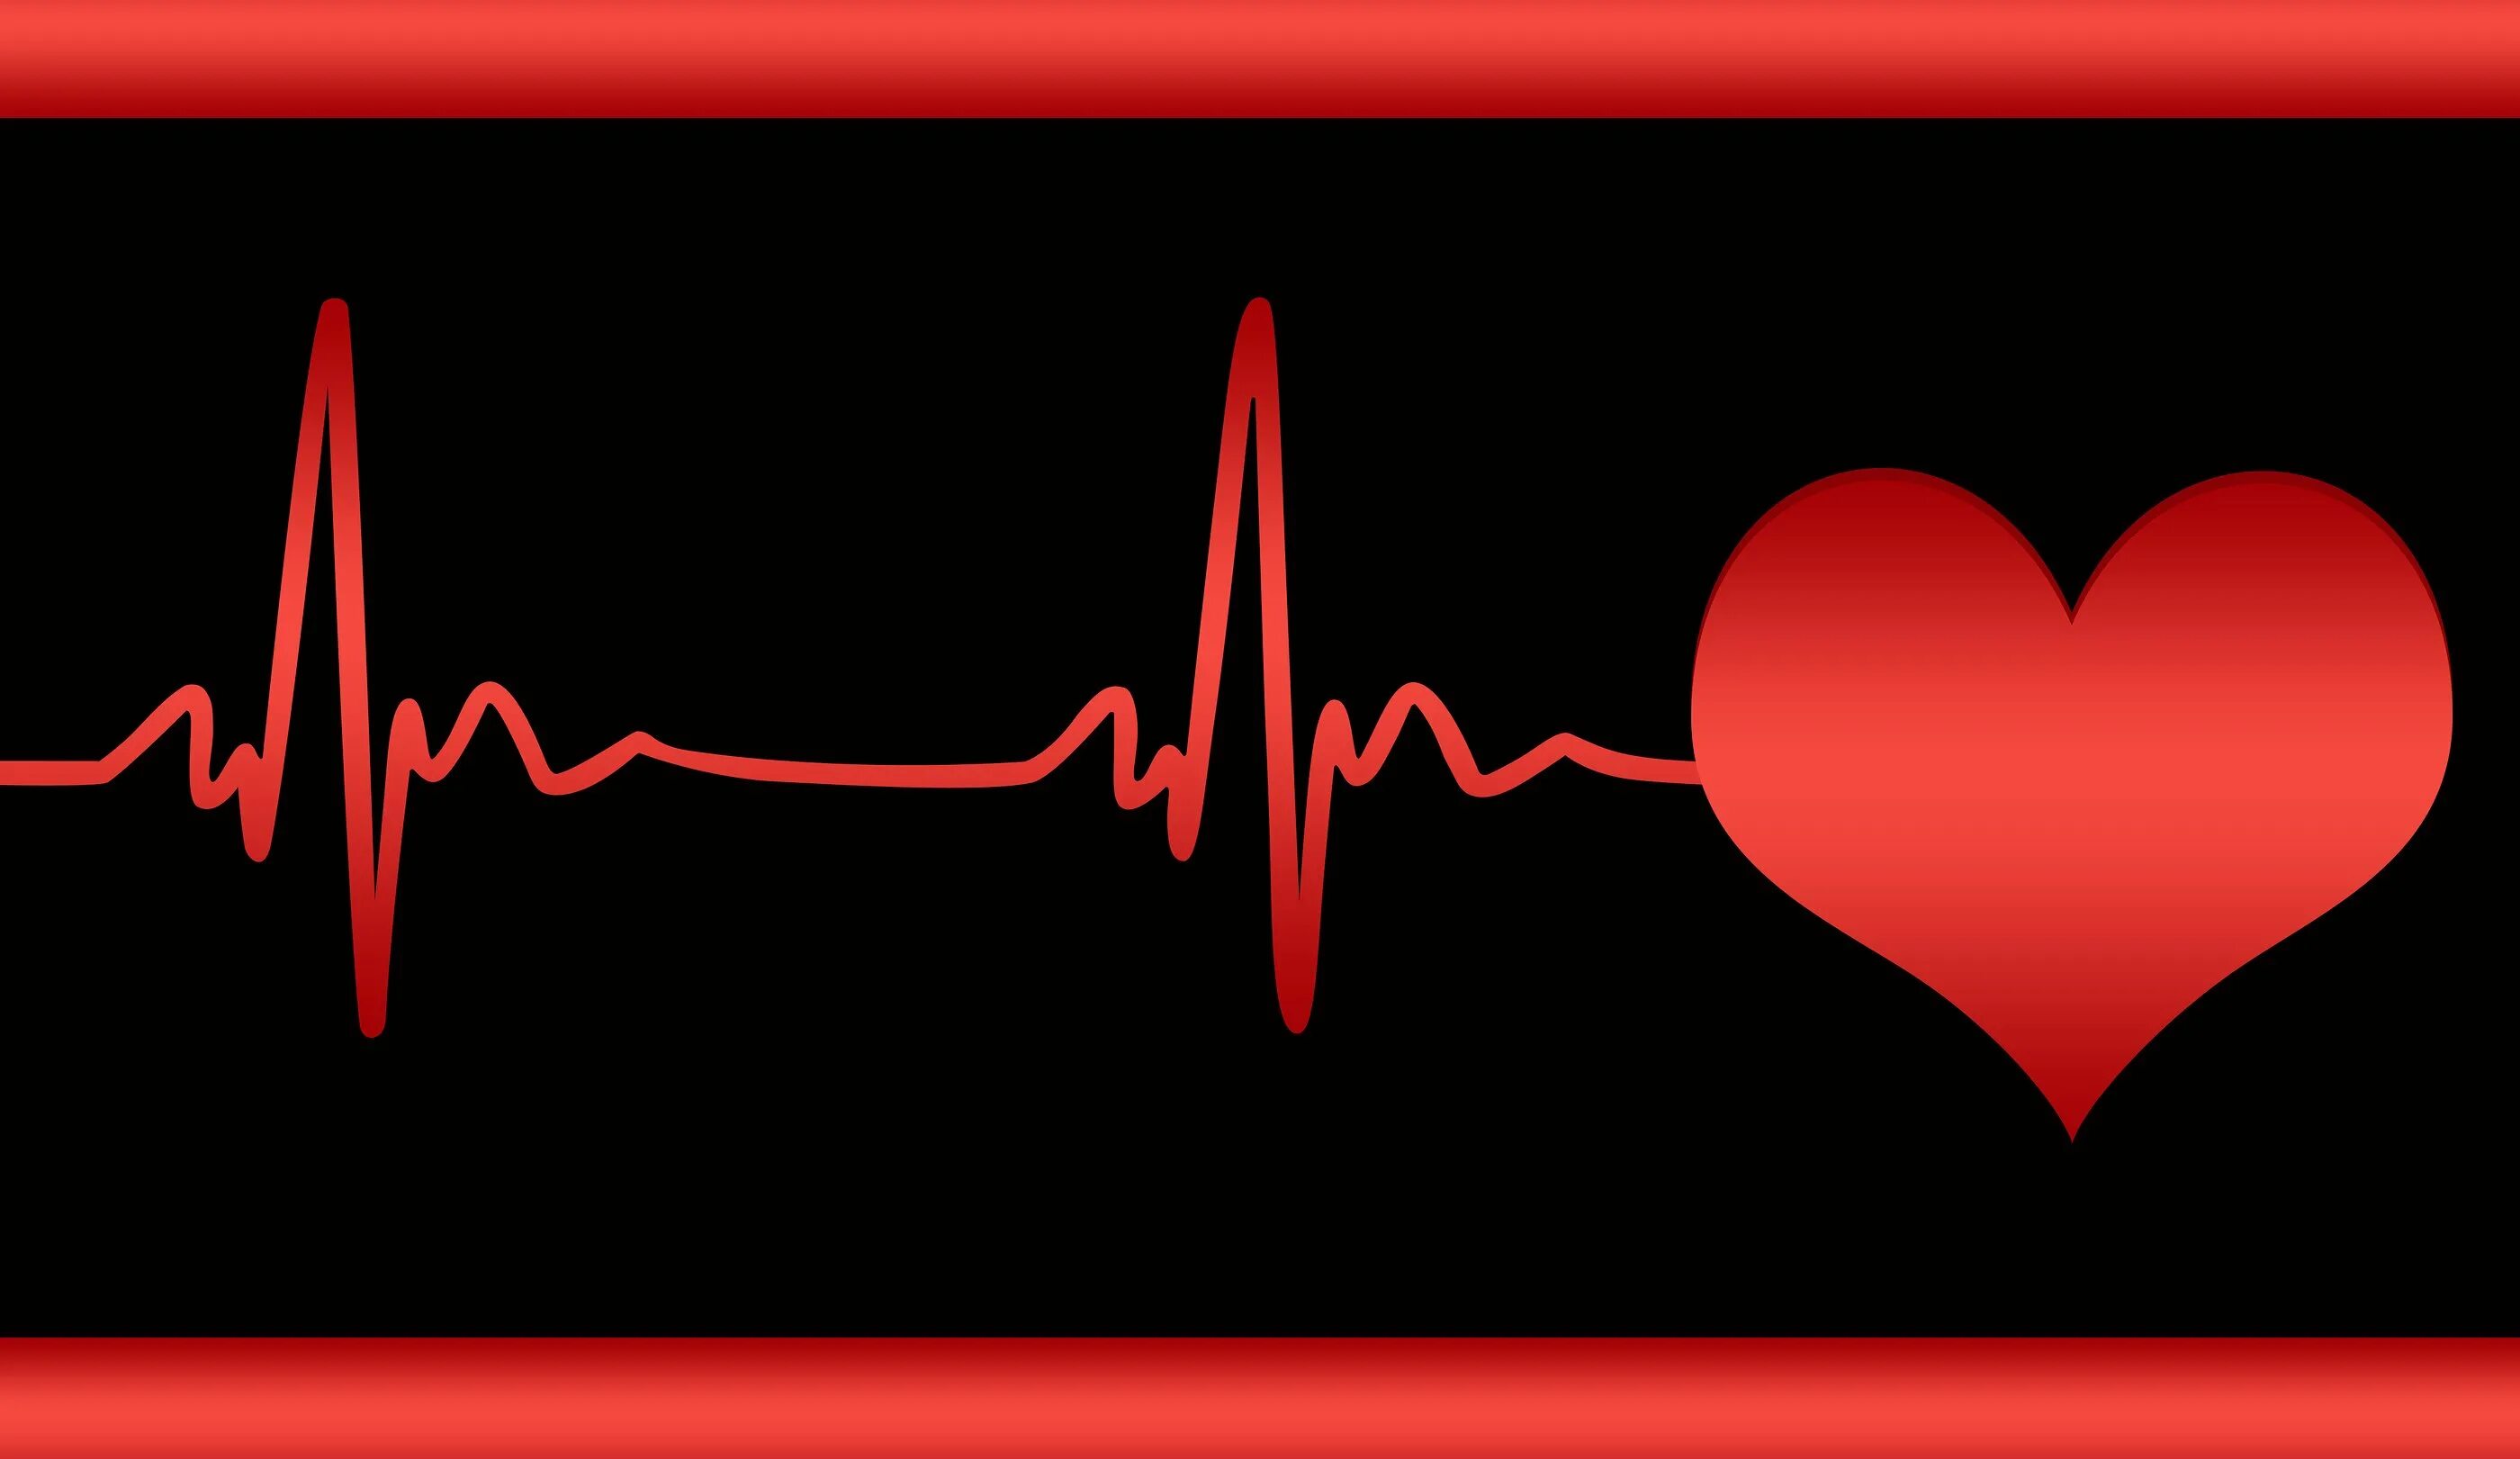 Твое сердце бьется в такт. Стук сердца. Кардиограмма сердца. Ритм сердца. "Ритм" (сердечный).